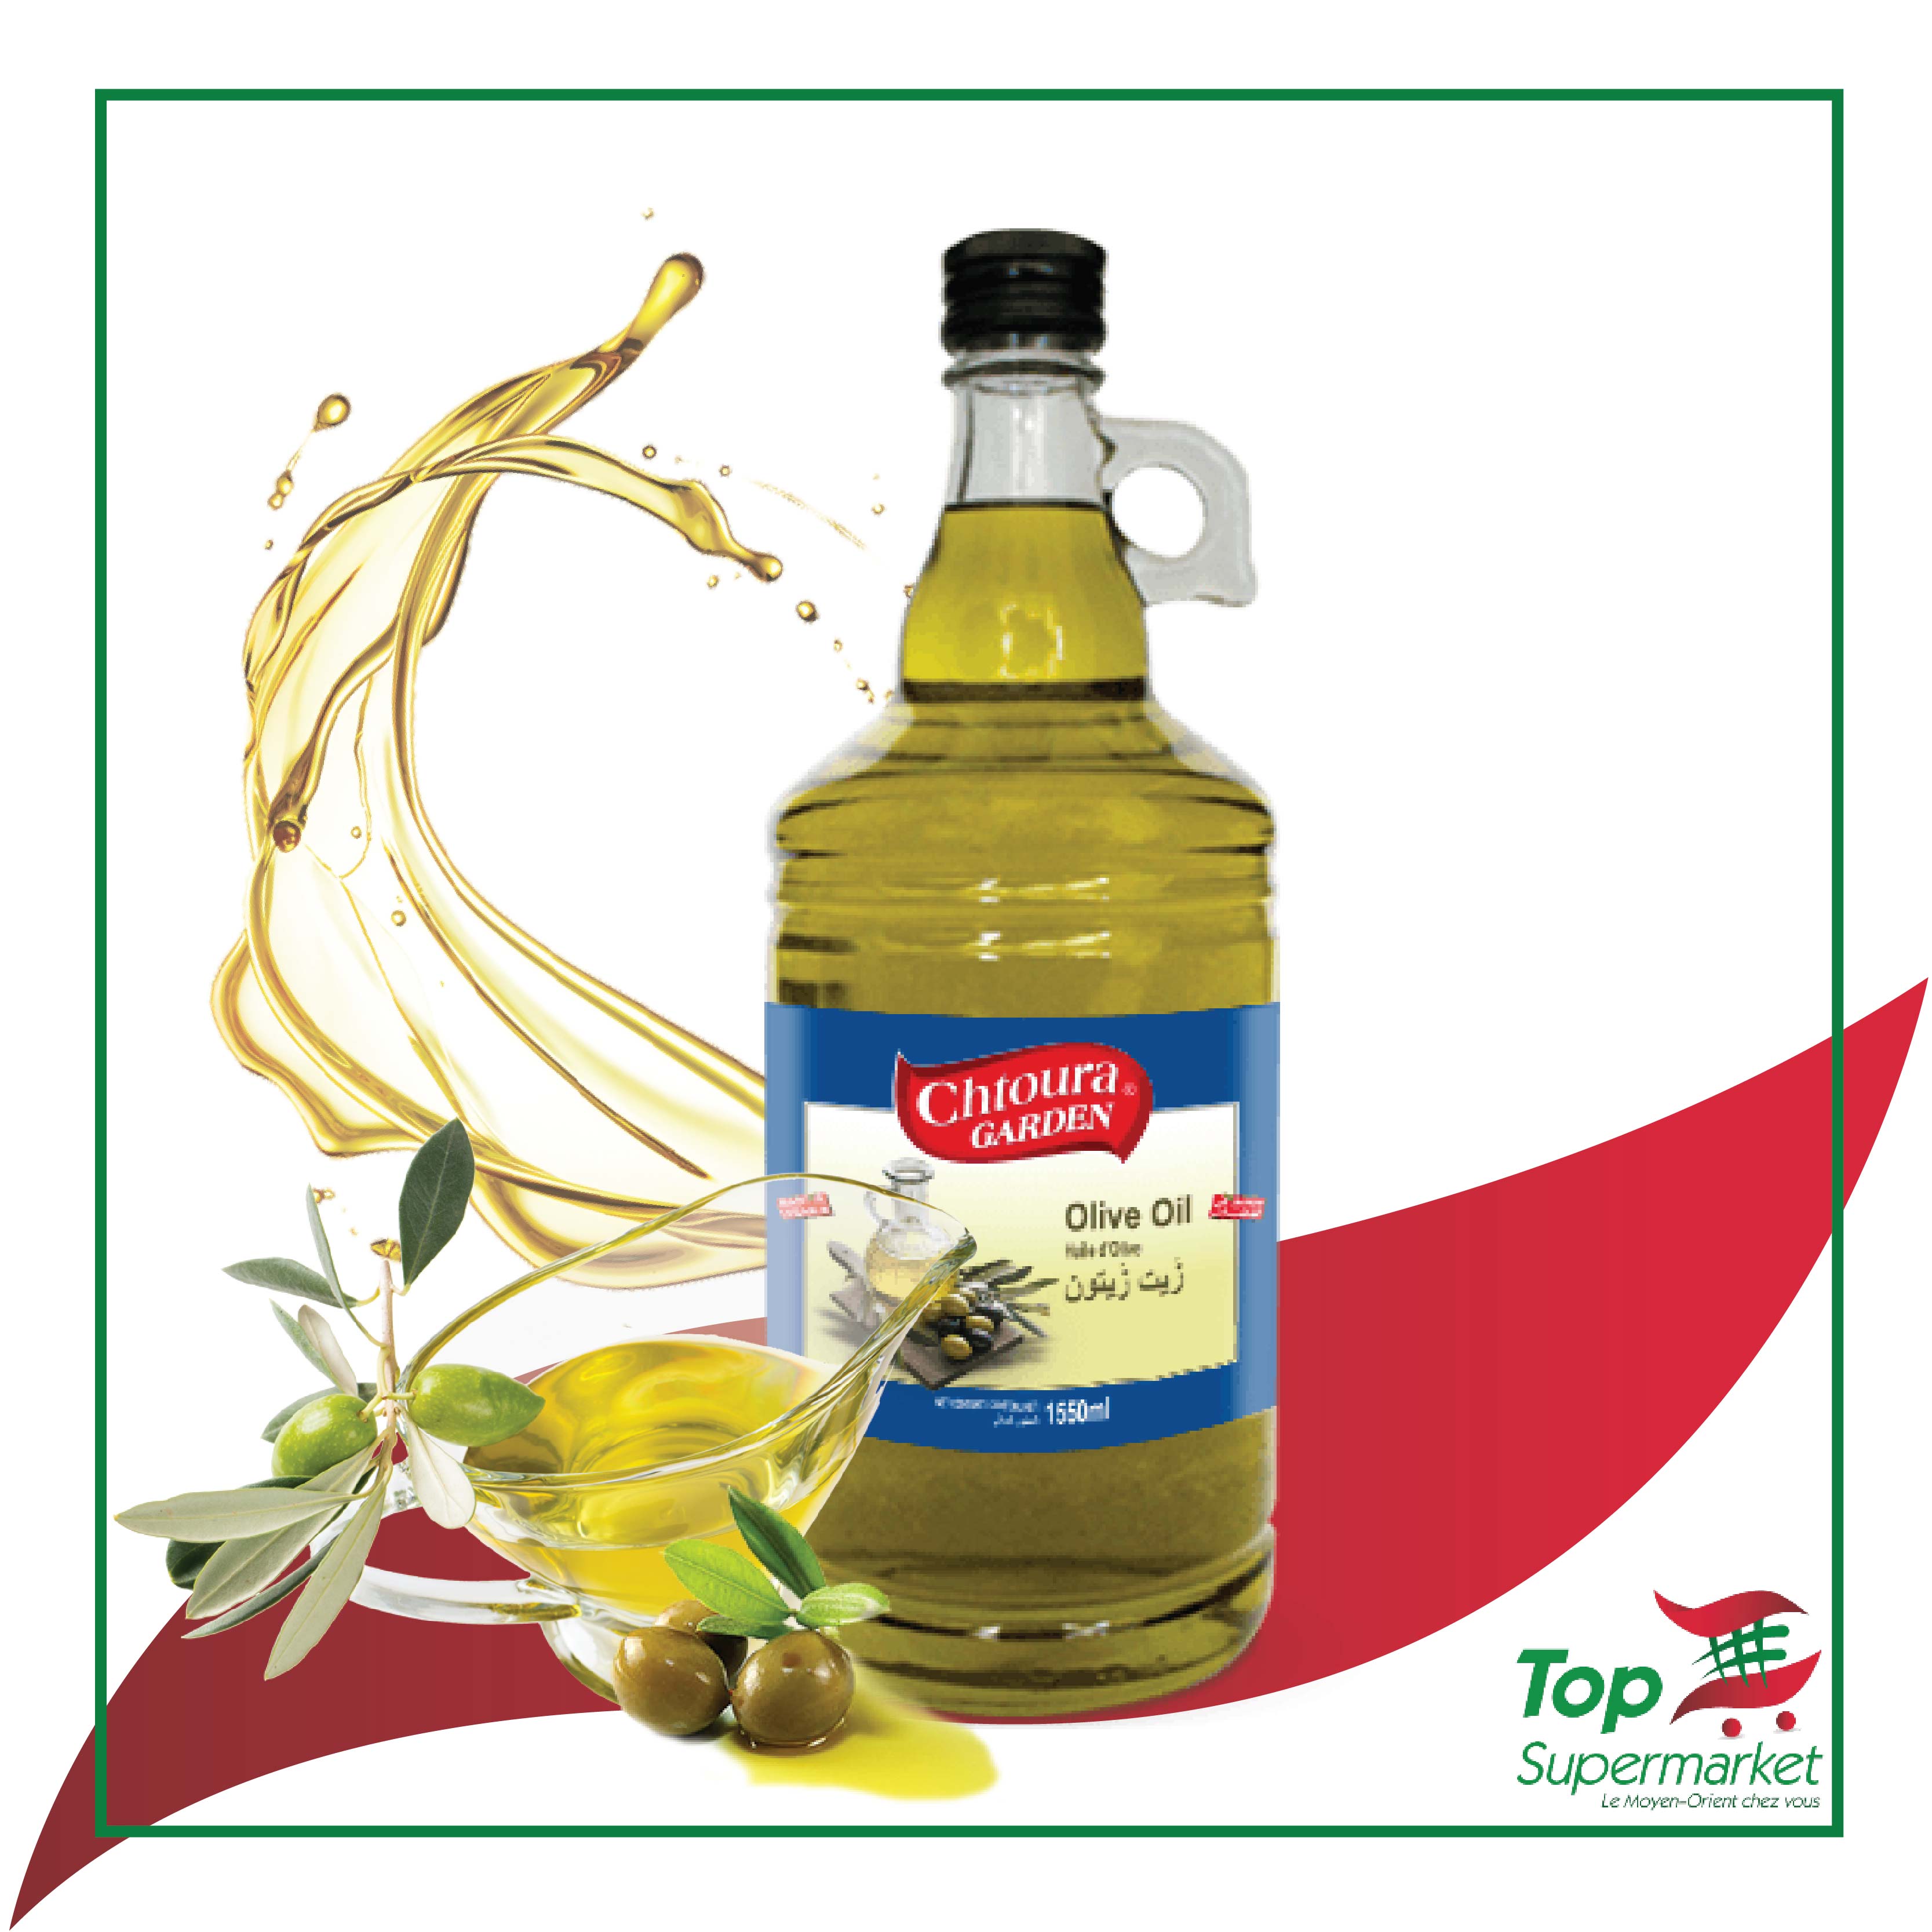 Chtoura Garden huile d'olive 1,55L